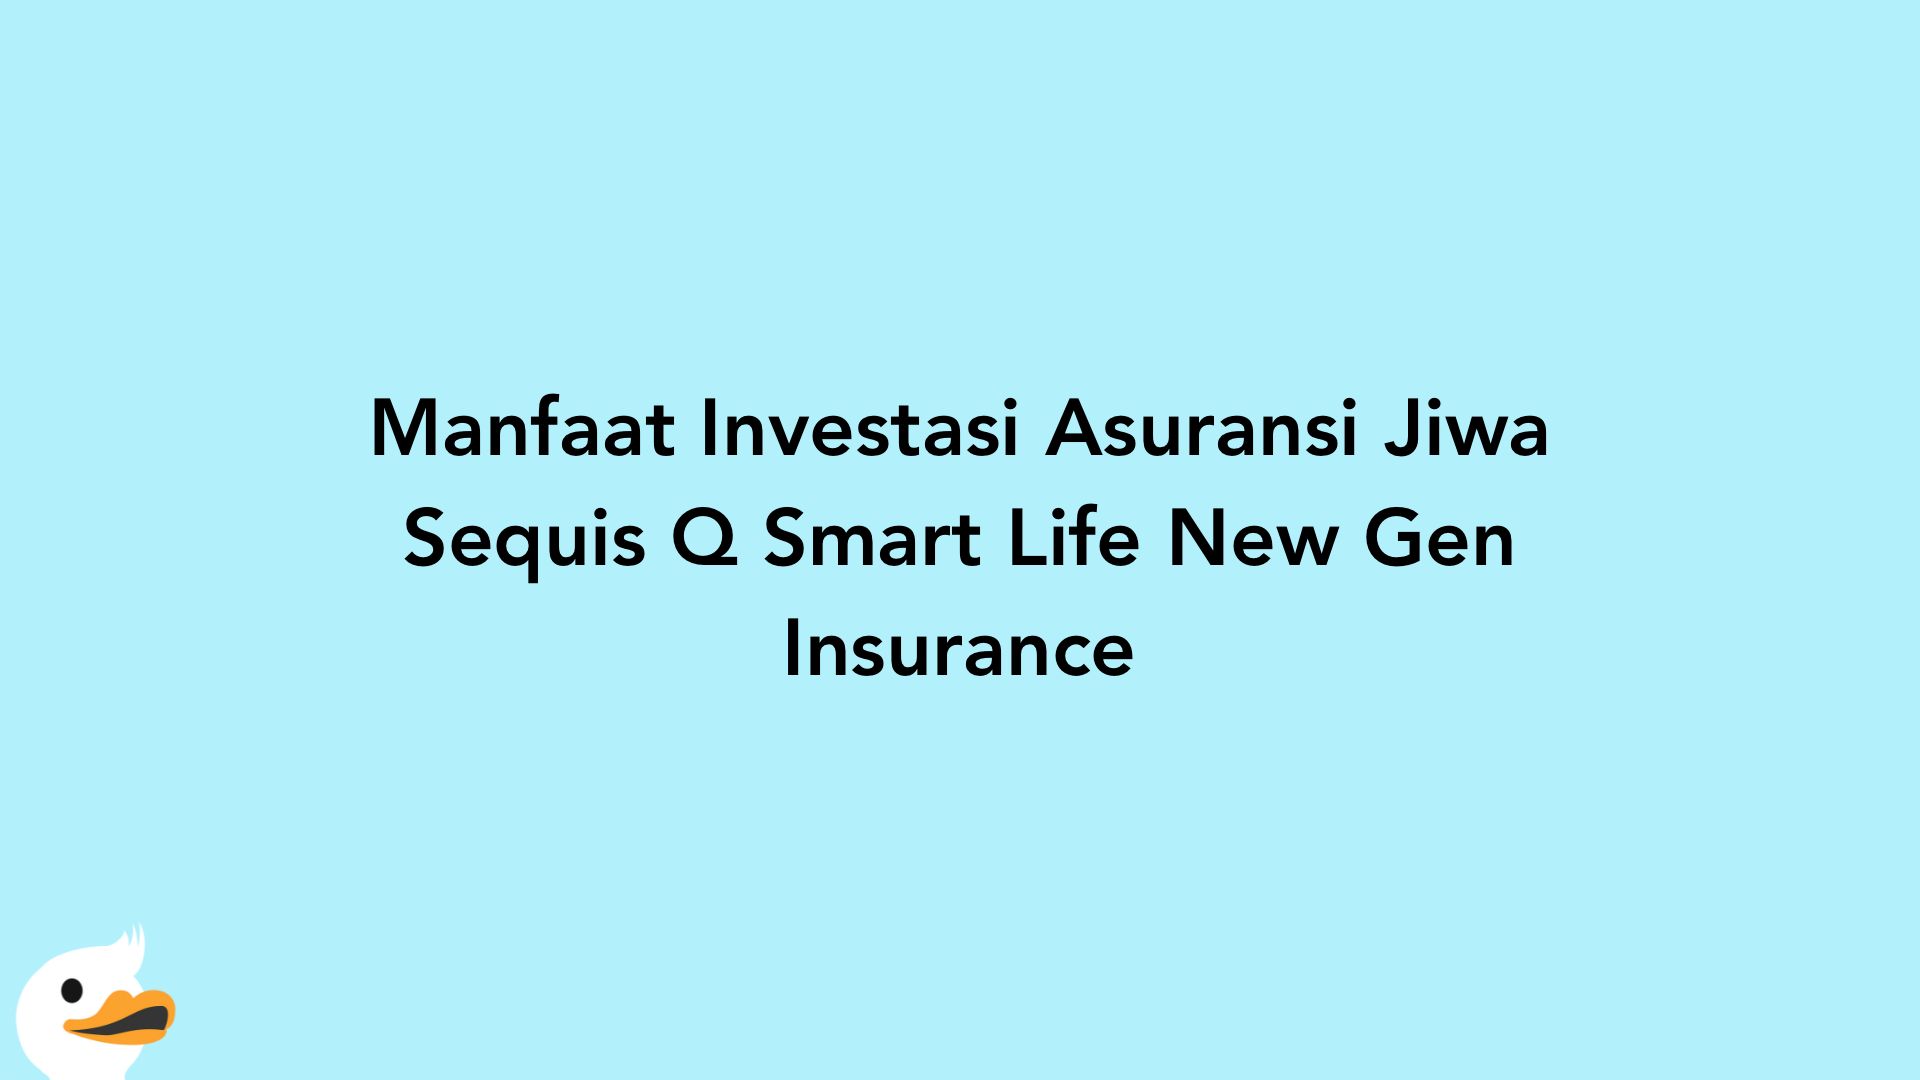 Manfaat Investasi Asuransi Jiwa Sequis Q Smart Life New Gen Insurance